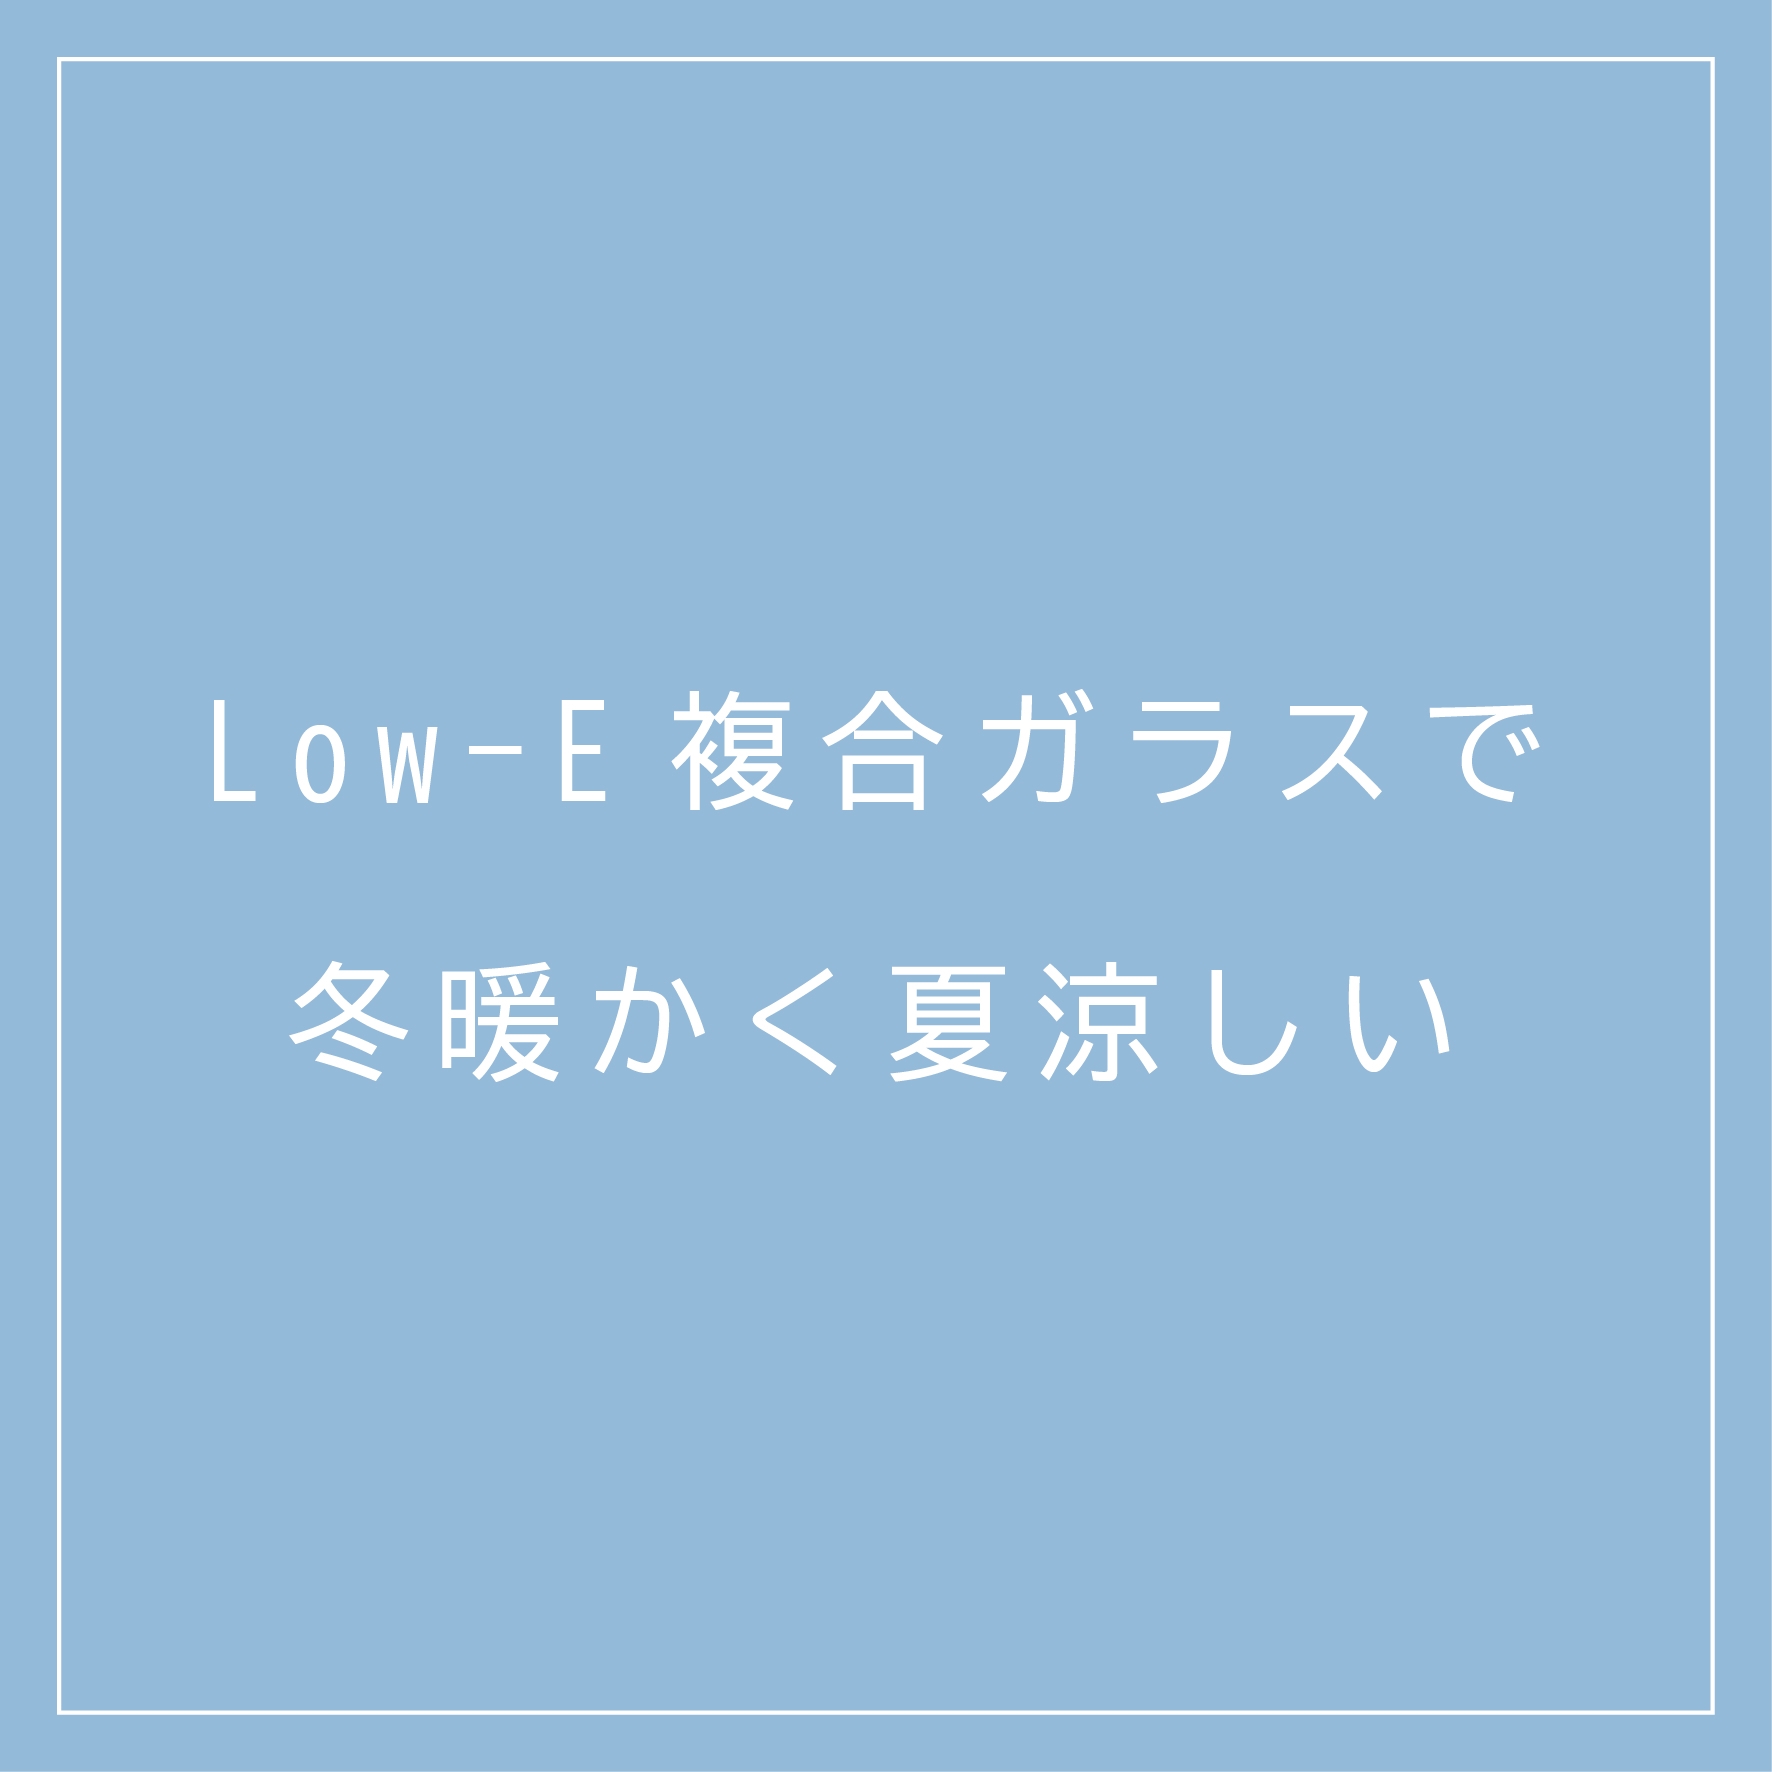 ページ内バナー(Low-e).jpg